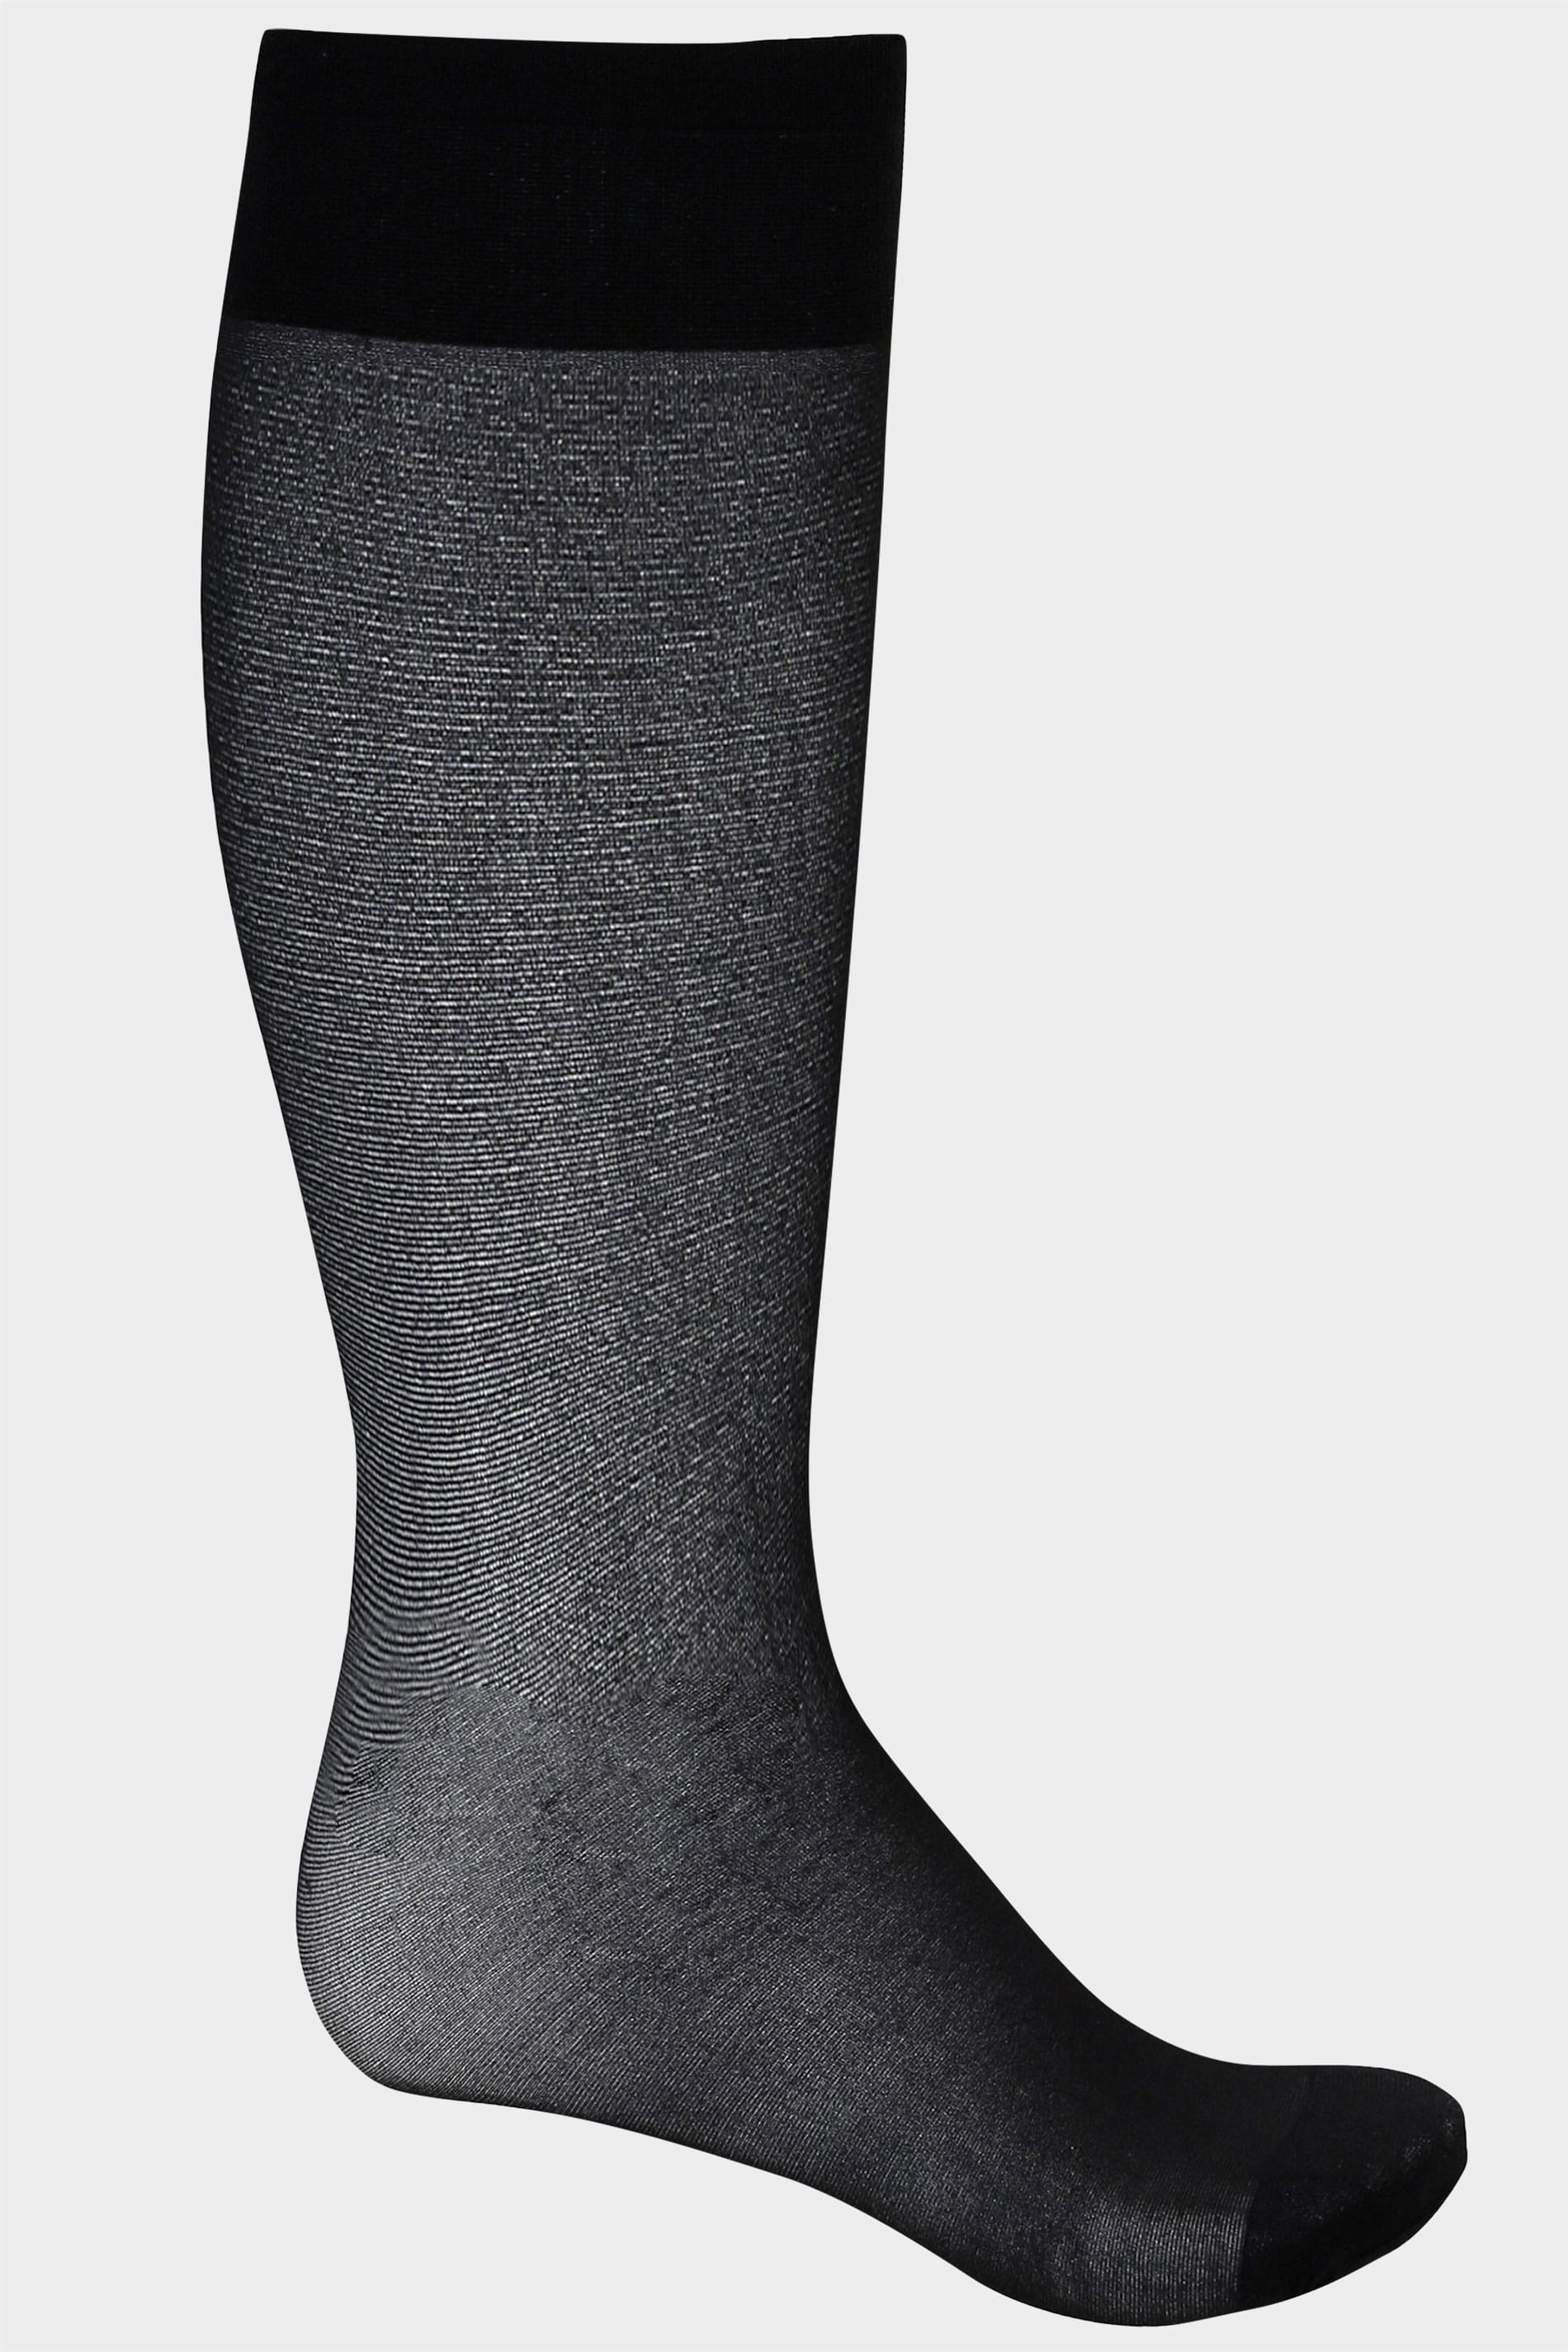 3 PACK Black Sheer Knee High Socks With Comfort Top 2